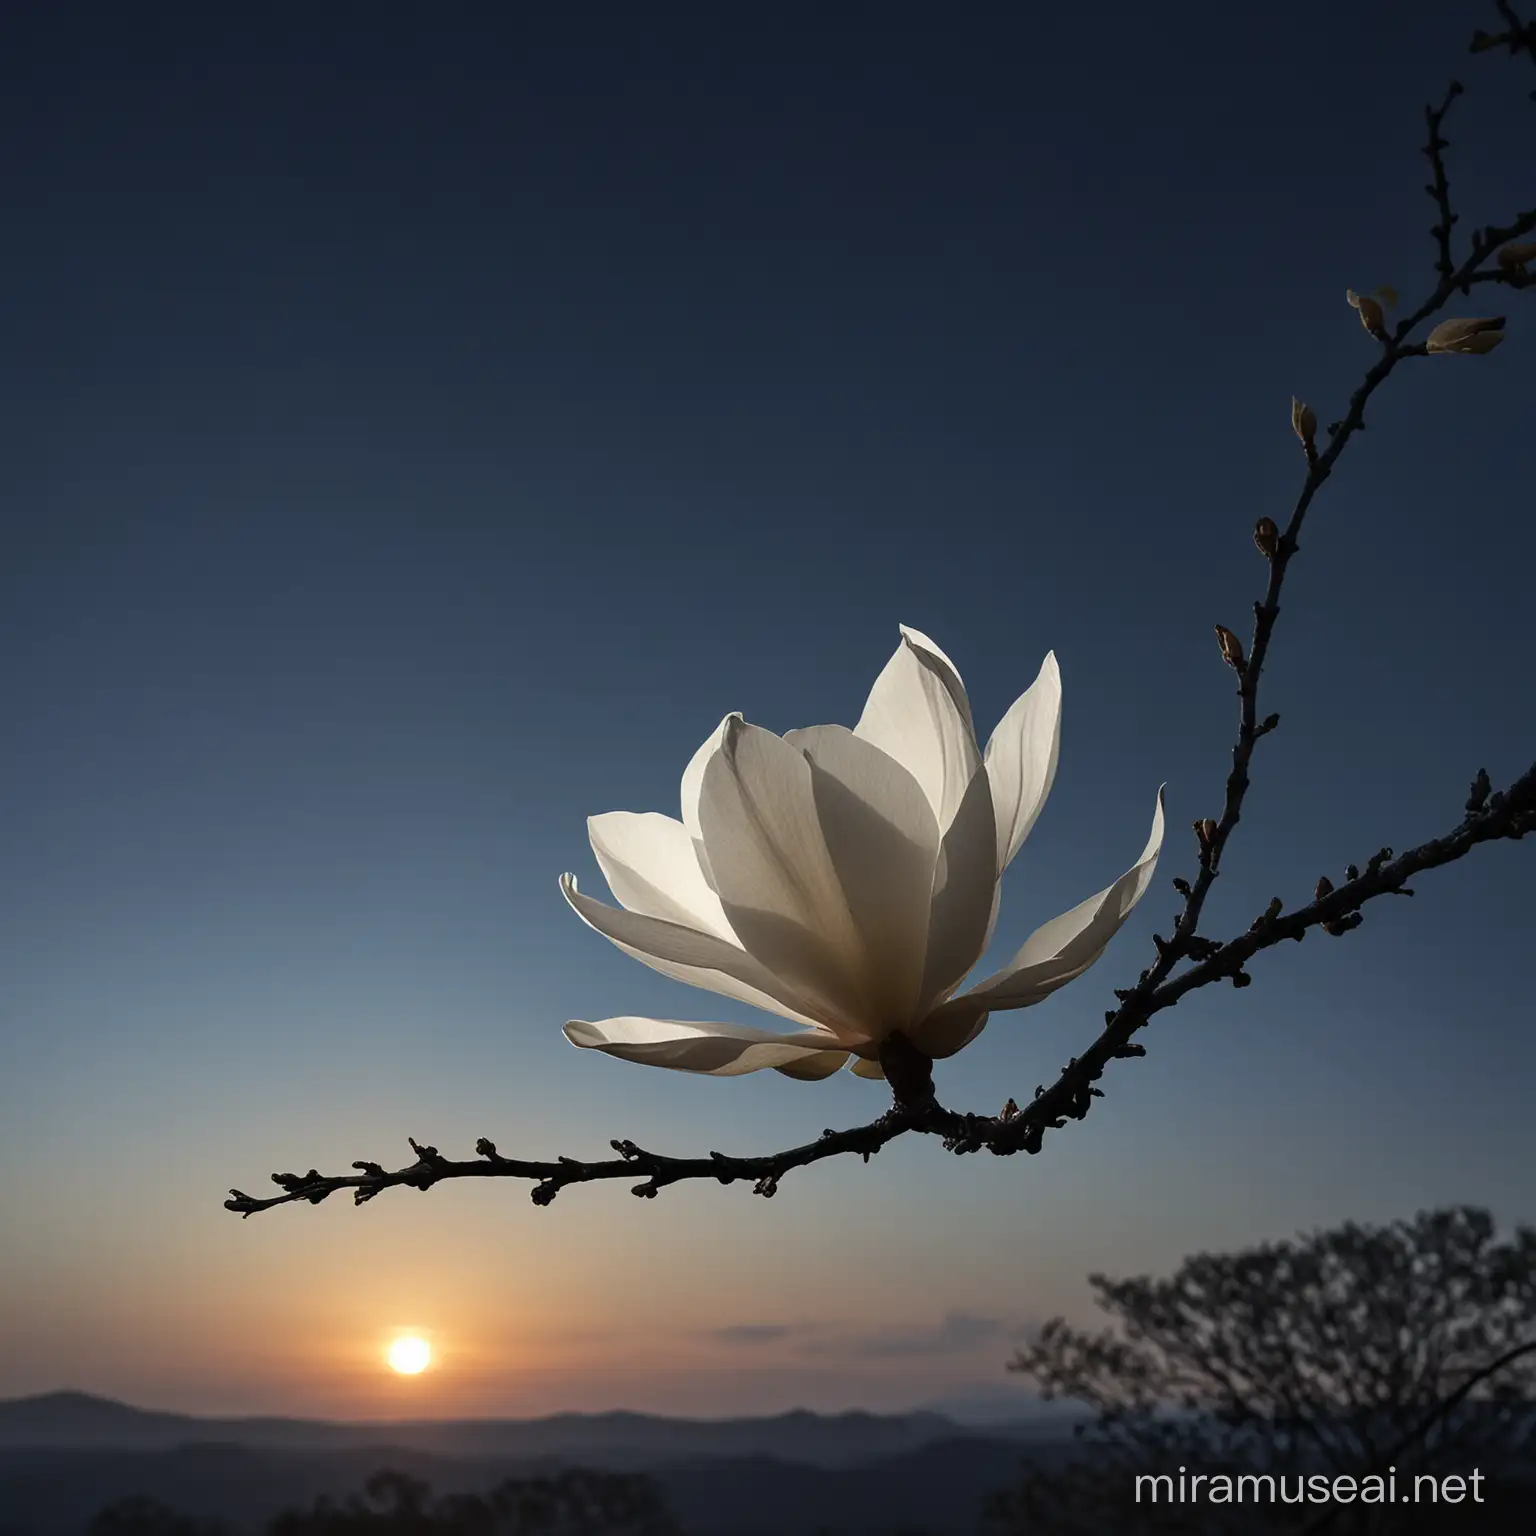 Graceful Magnolia Flower in Twilight Illuminated Beauty